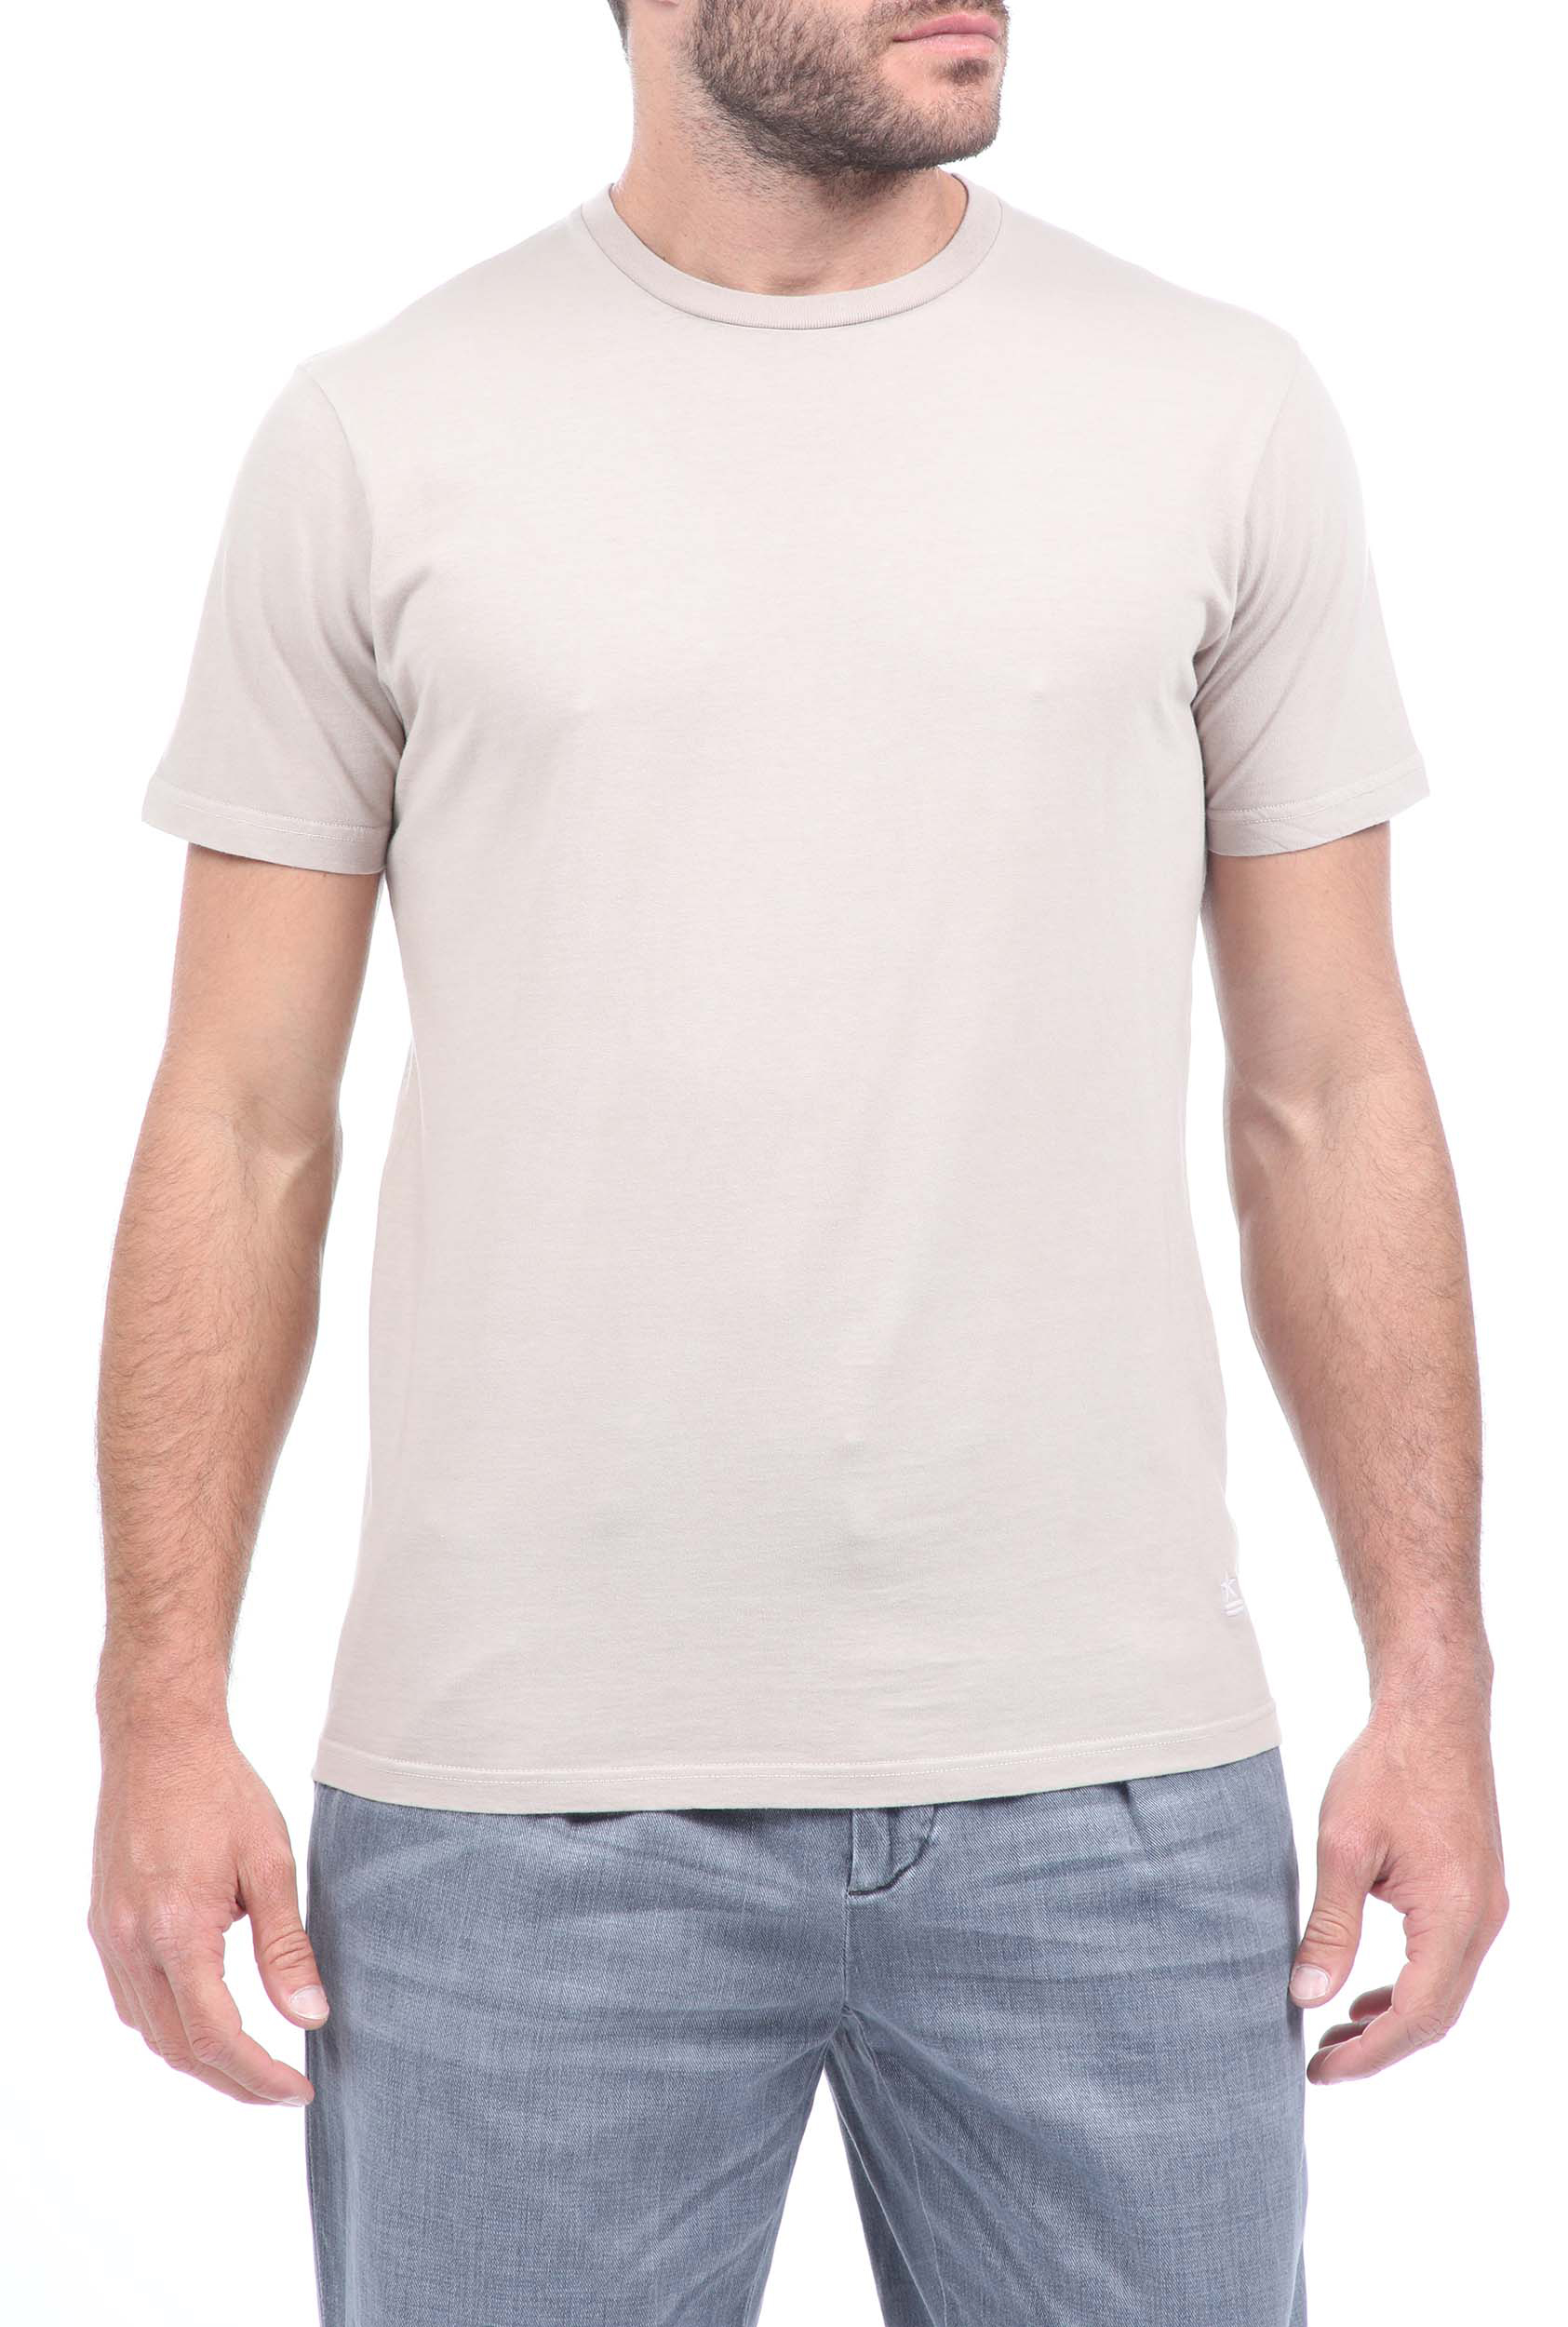 Ανδρικά/Ρούχα/Μπλούζες/Κοντομάνικες UNIFORM - Ανδρικό t-shirt UNIFORM γκρι